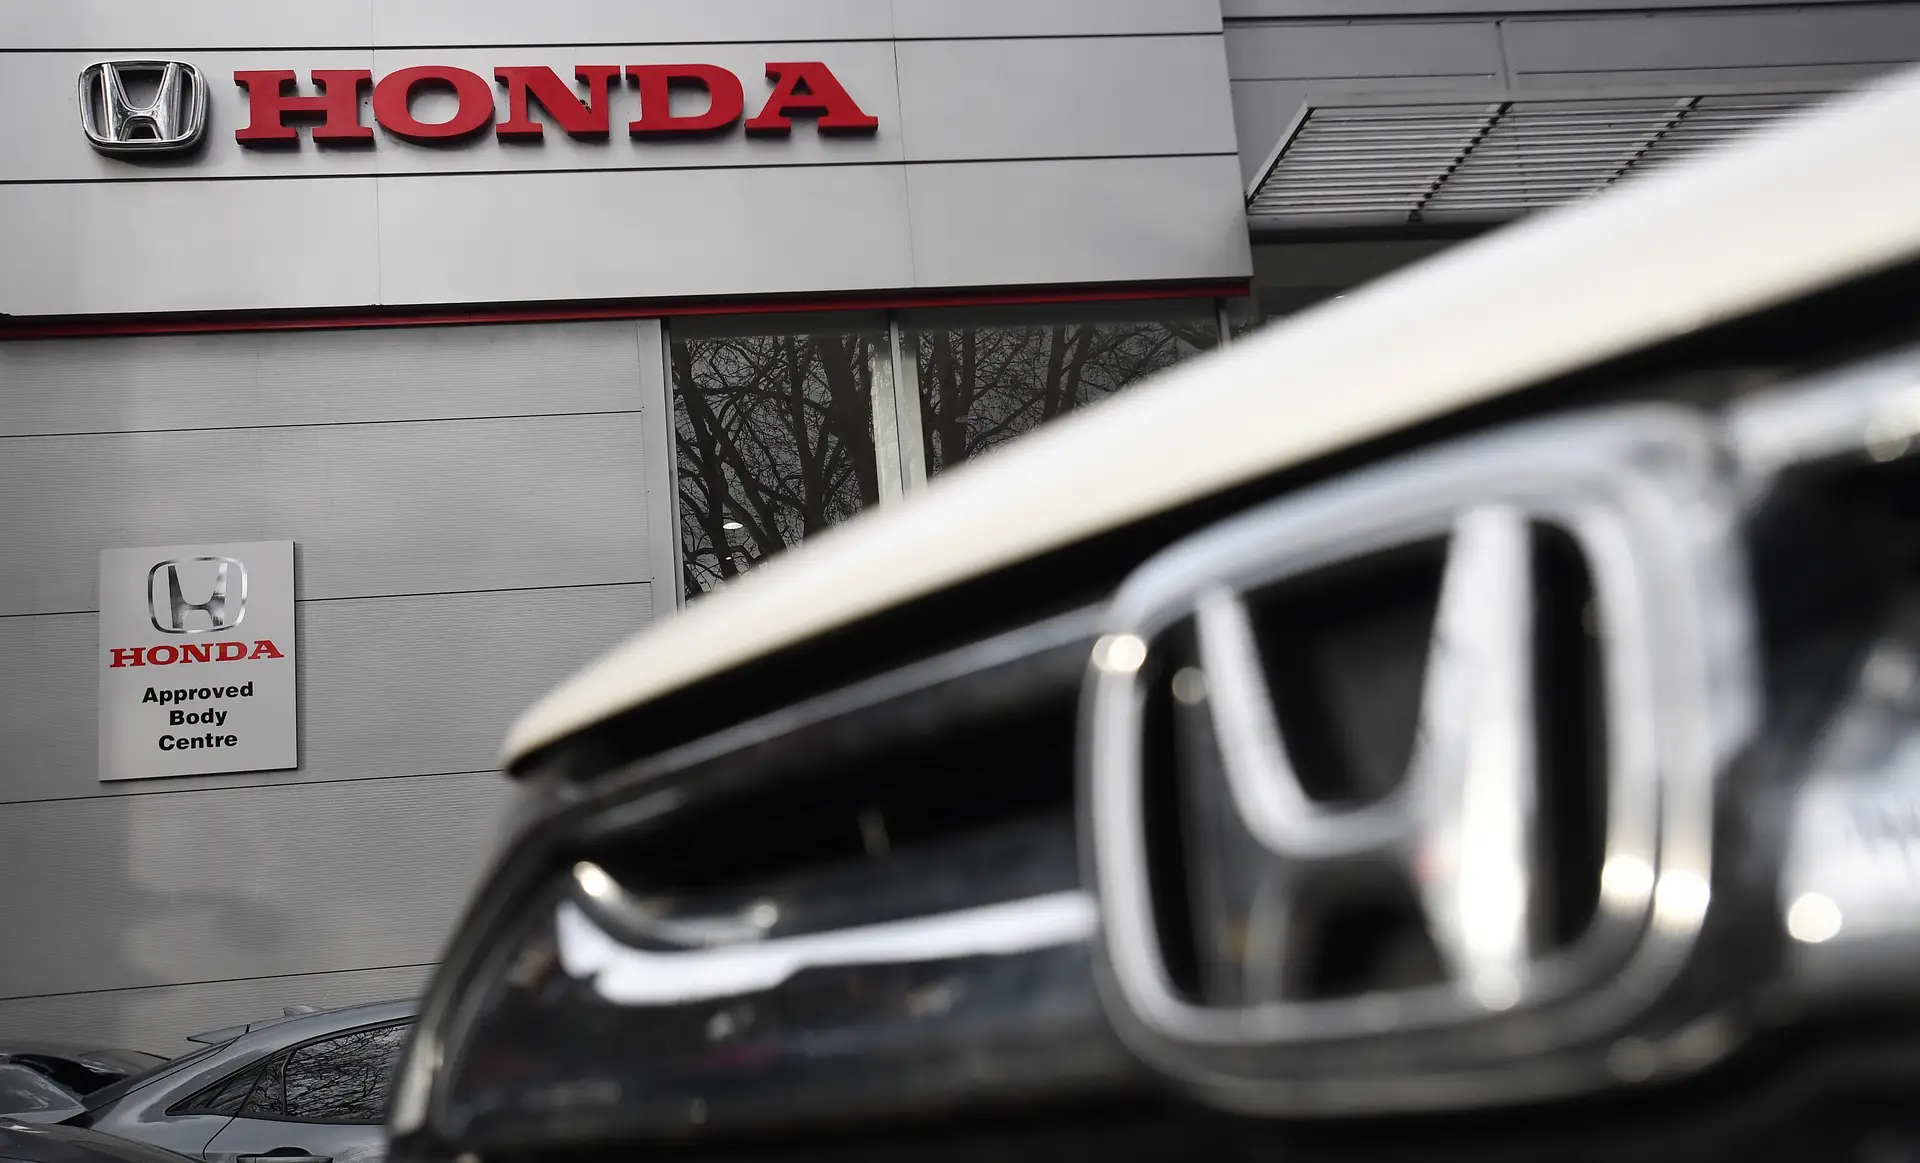 Honda corta parte da produção em duas fábricas japonesas por problemas de abastecimento